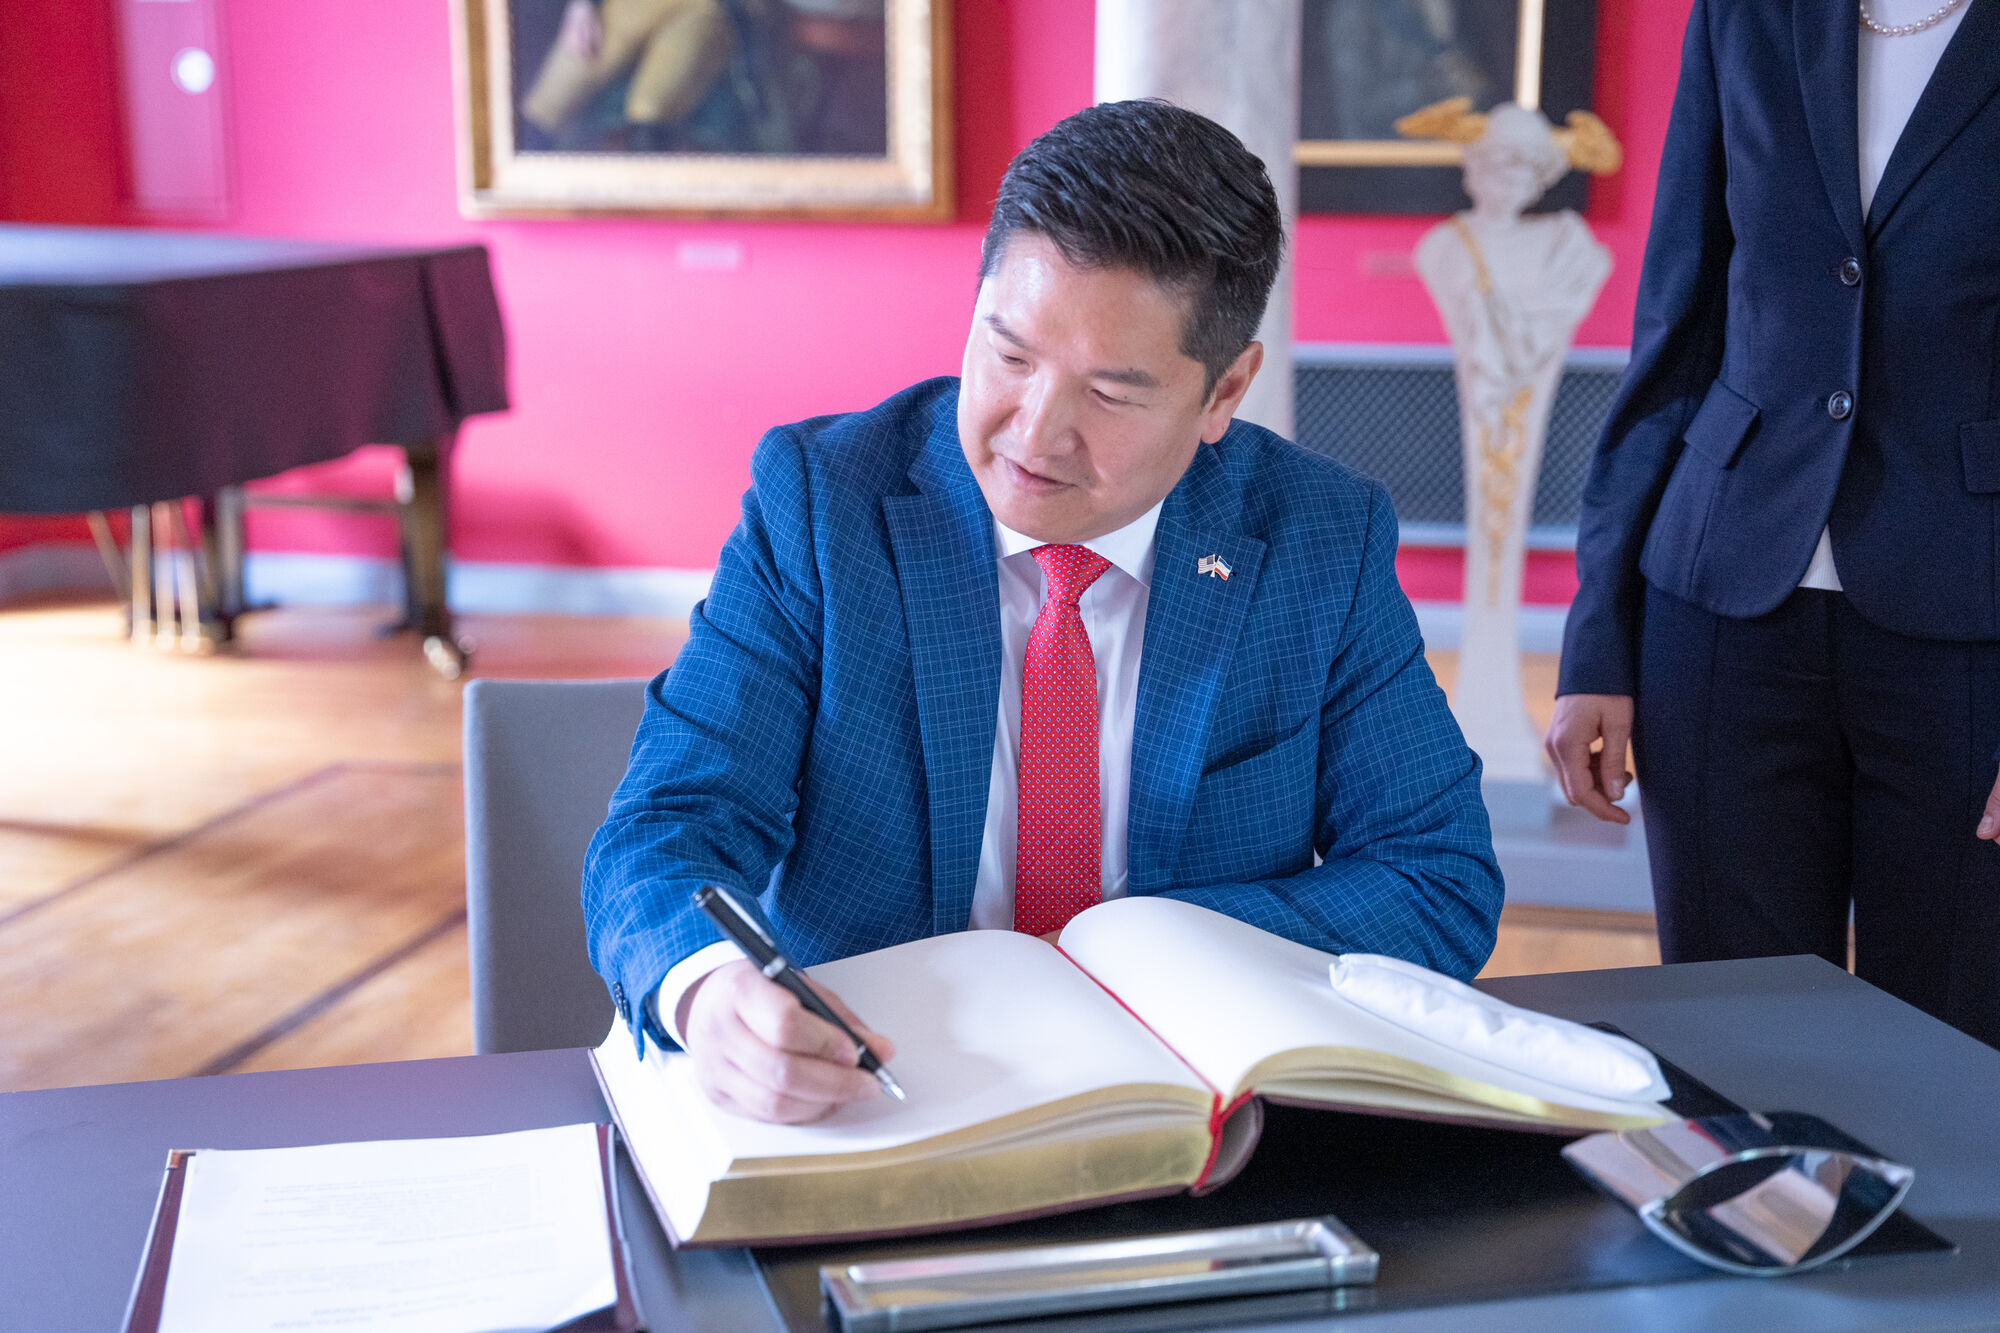 Eintrag des Generalkonsuls der USA, Jason Chue, in das Gästebuch der Universität Greifswald